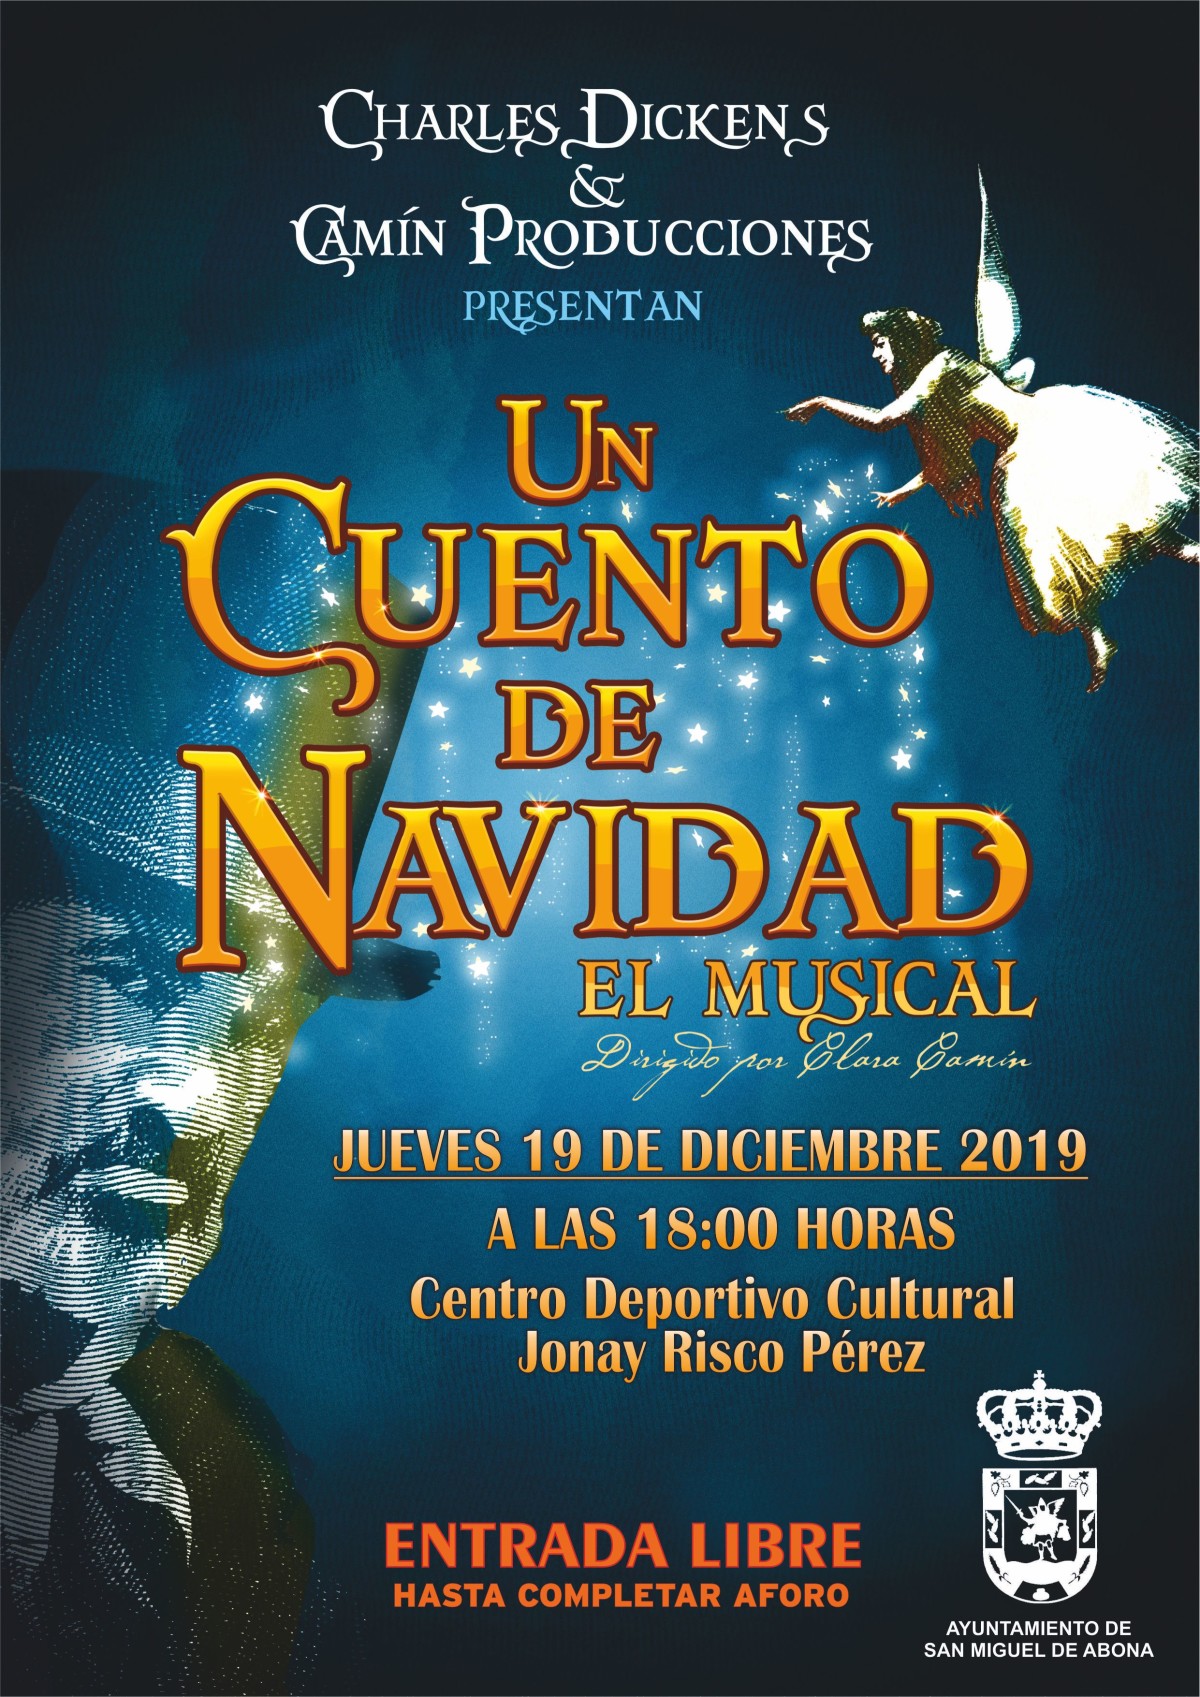 El musical “Un cuento de Navidad” llega a San Miguel